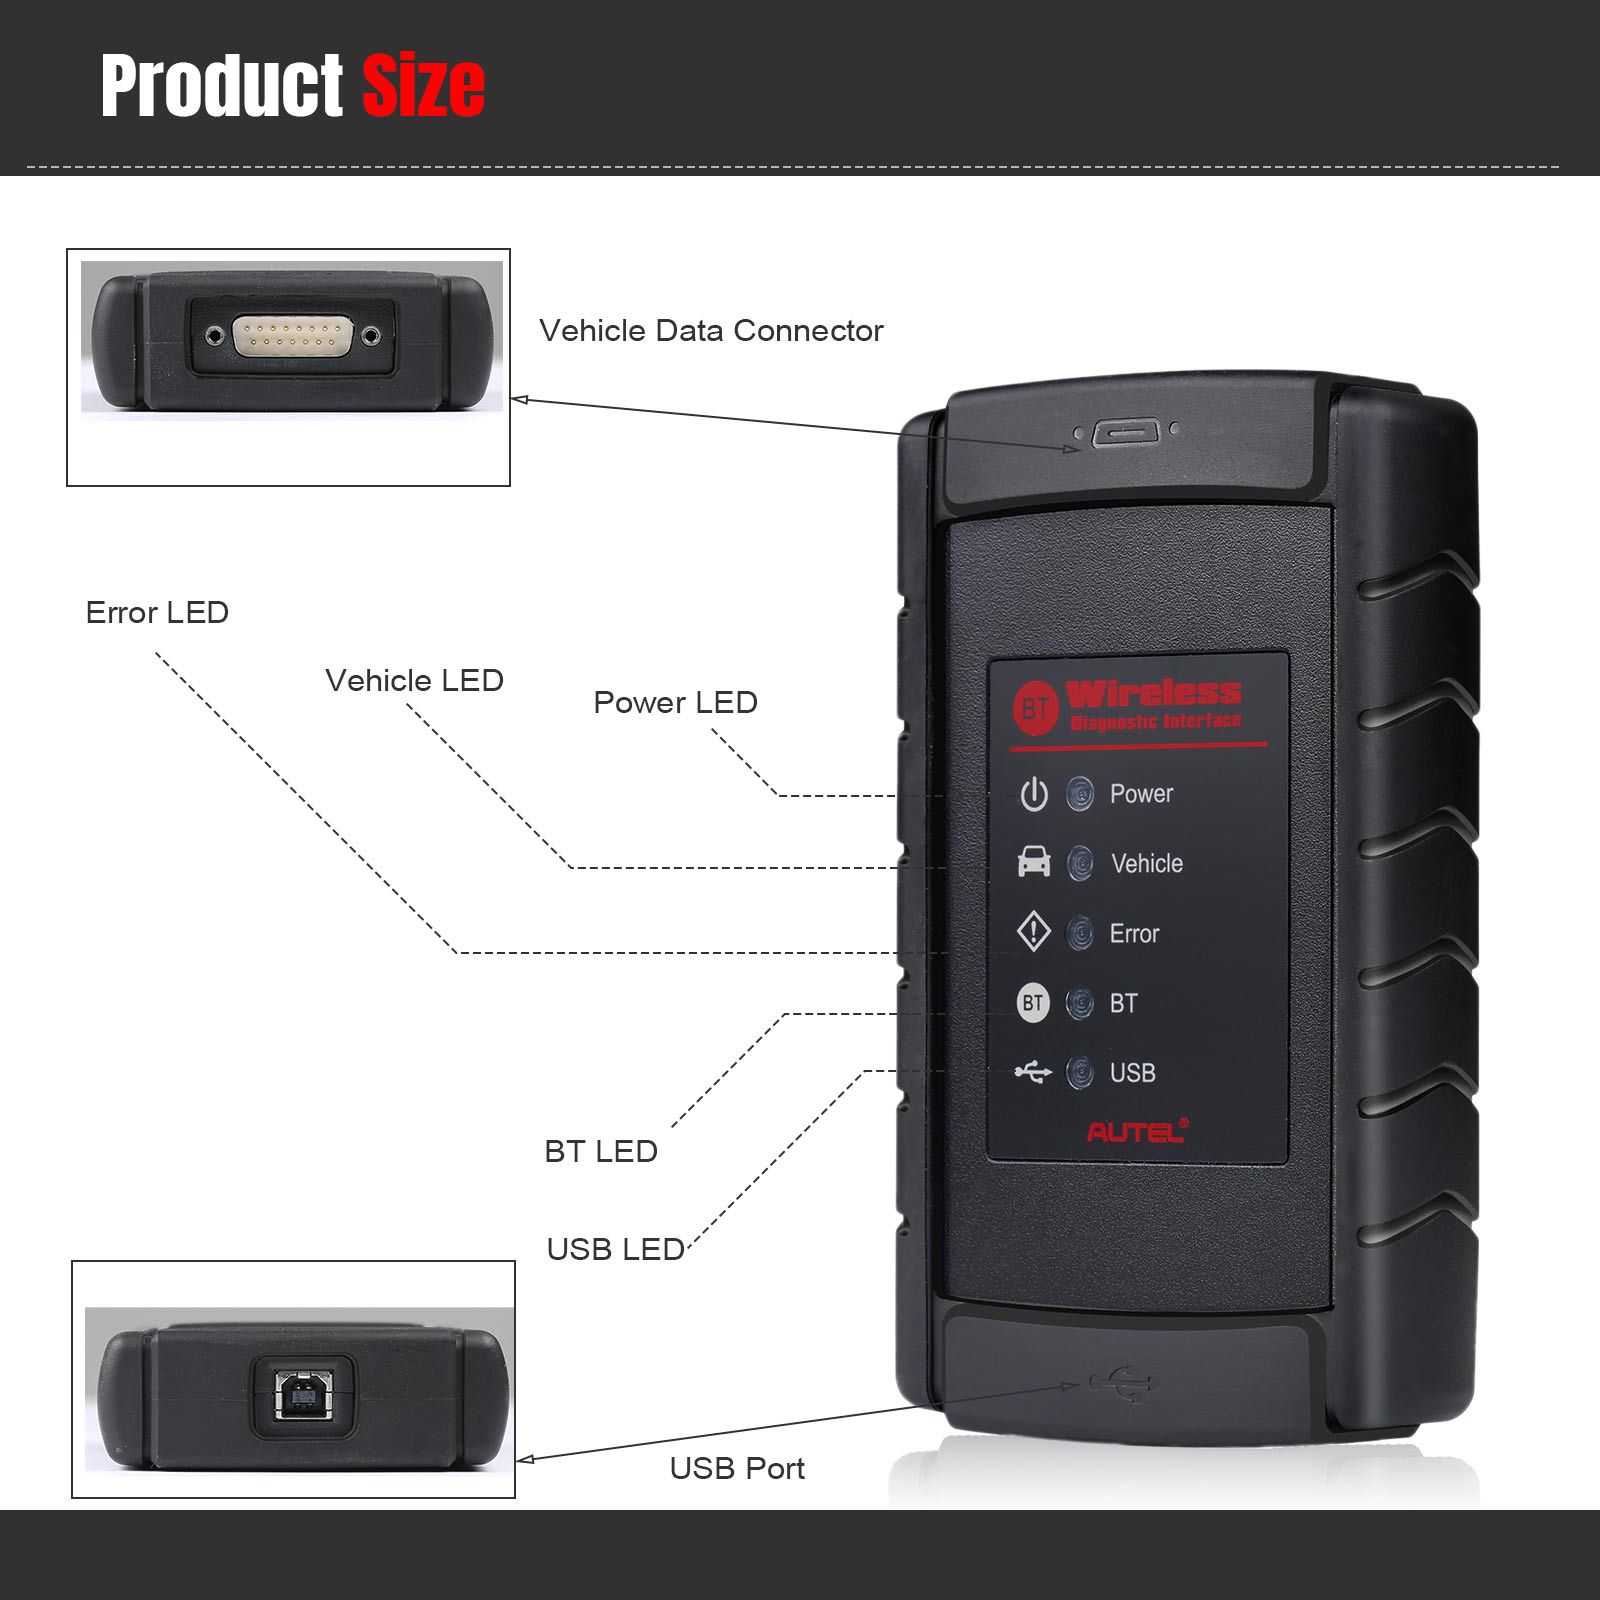 기본 Autel VCI Bluetooth 어댑터 무선 진단 인터페이스 Bluetooth 연결 VCI MS908S/MS908/MK908/MS905/MaxiSys Mini용